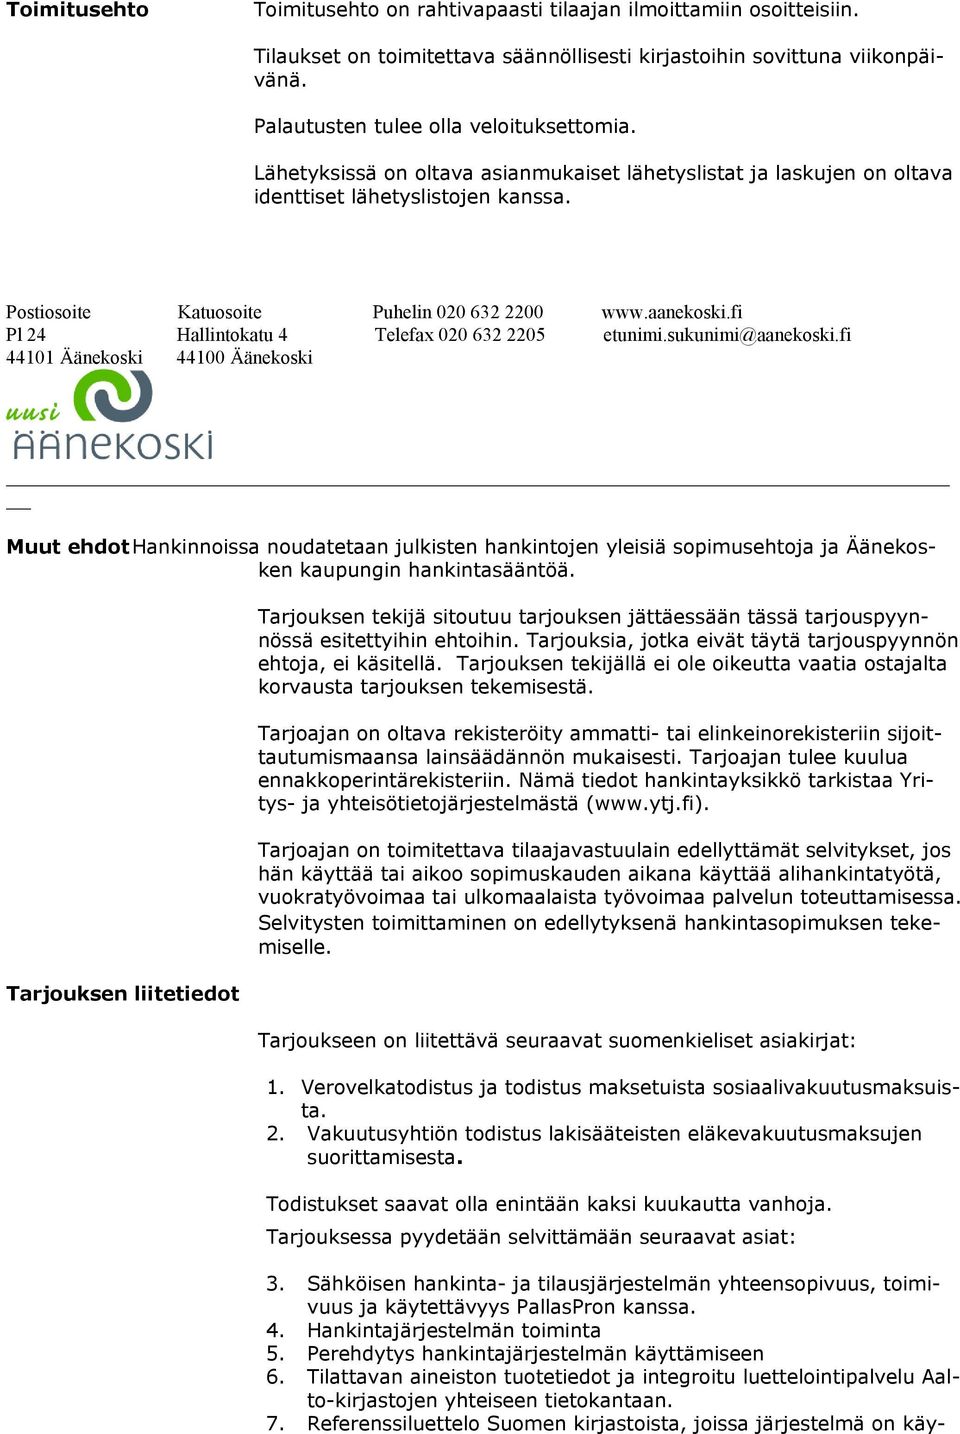 Muut ehdot Hankinnoissa noudatetaan julkisten hankintojen yleisiä sopimusehtoja ja Äänekosken kaupungin hankintasääntöä.